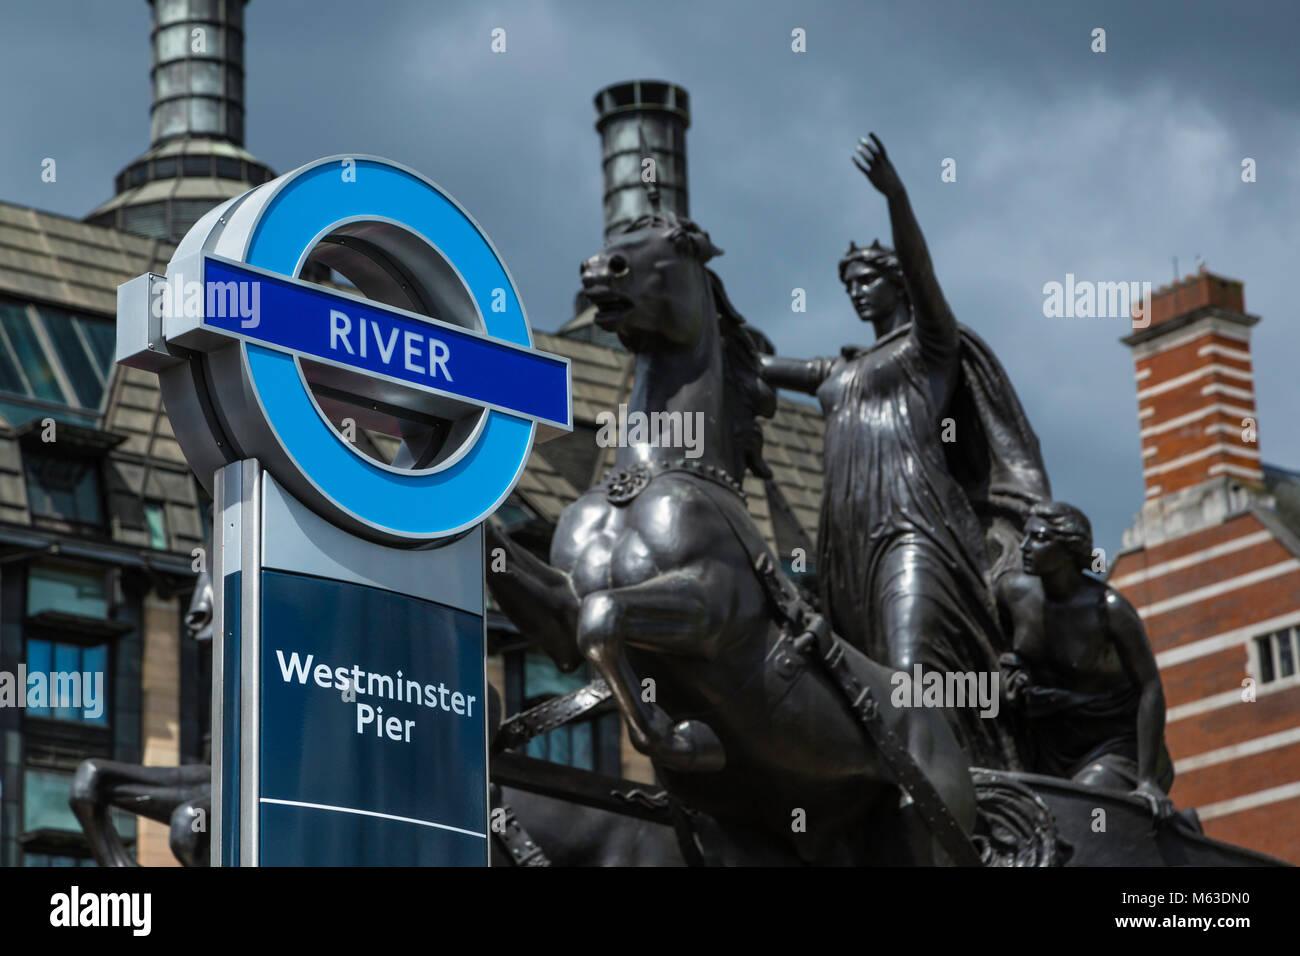 Statue zu Boudiccan Rebellion auf Victoria Embankment, Westminster, London mit Vorzeichen nach Westminster Pier. Stockfoto